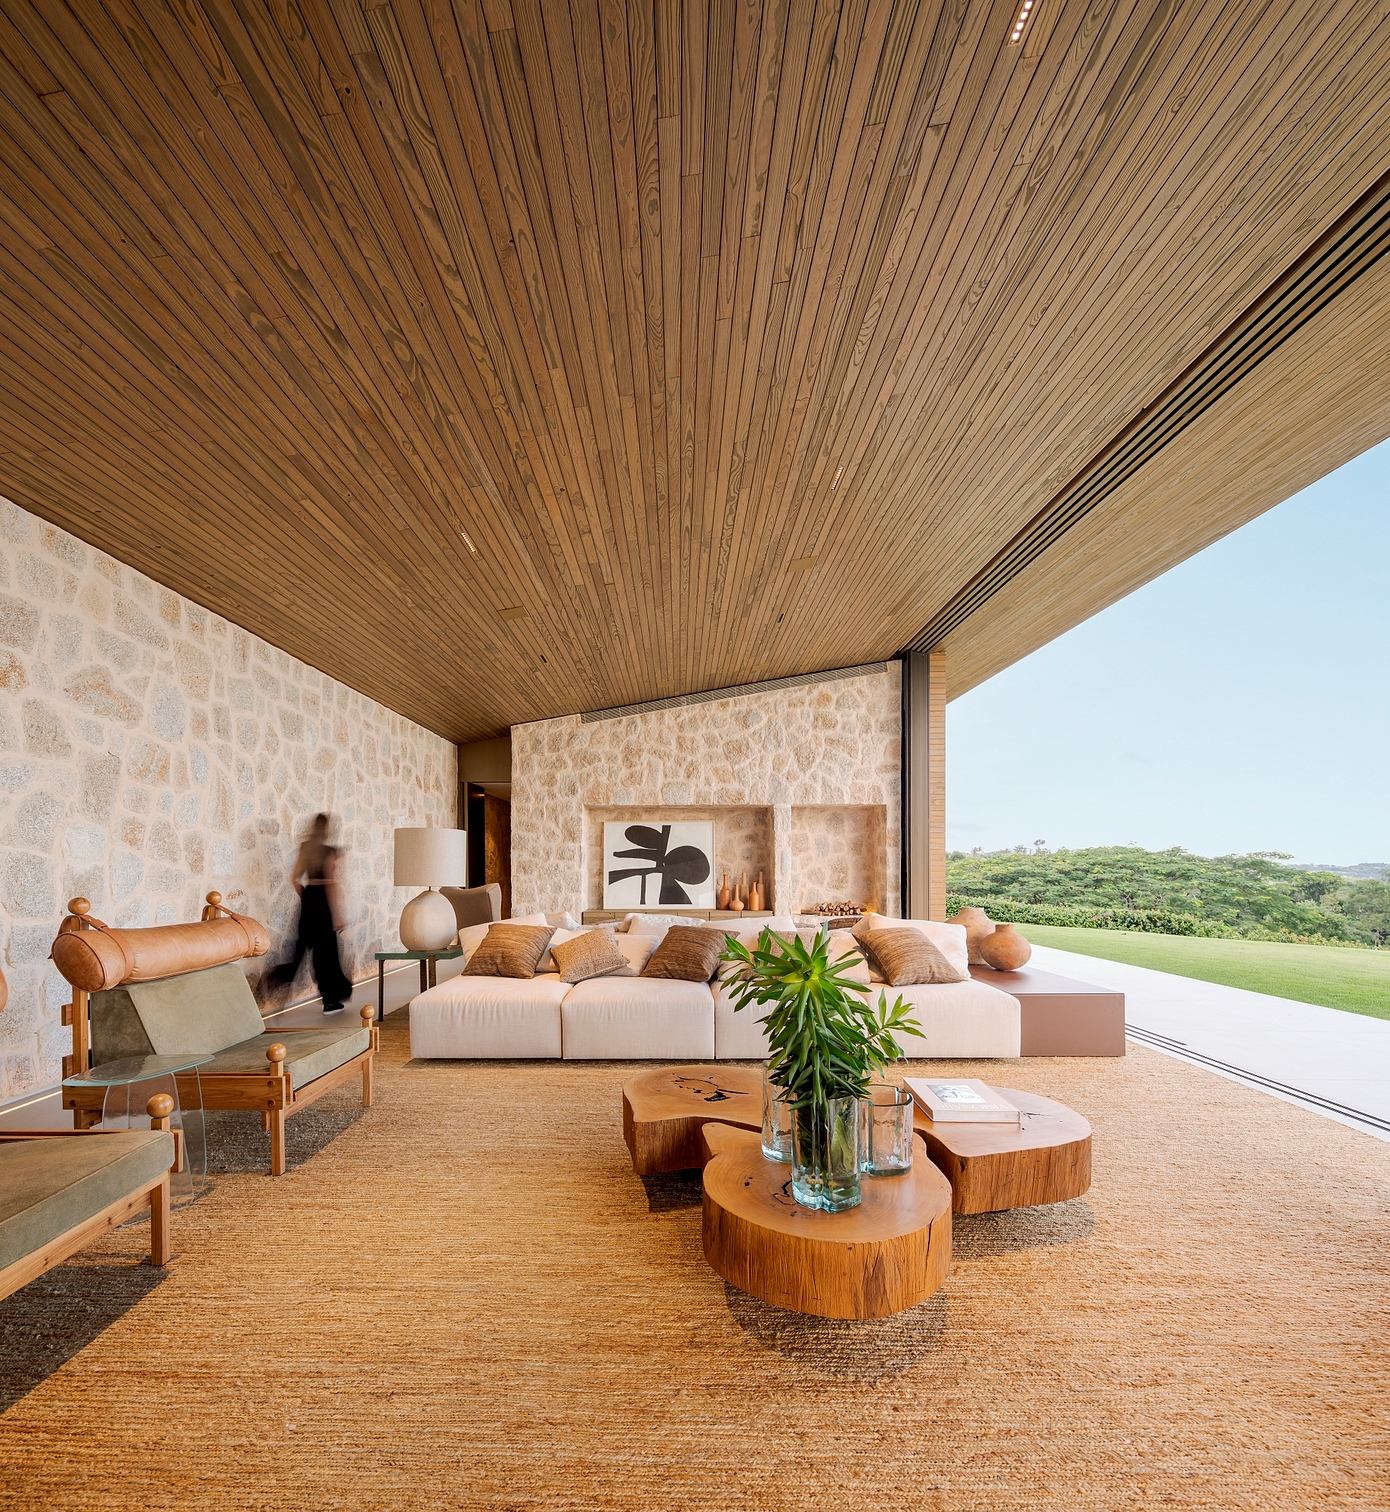 Boa Vista House: Studio Arthur Casas’ Spectacular Residential Creation